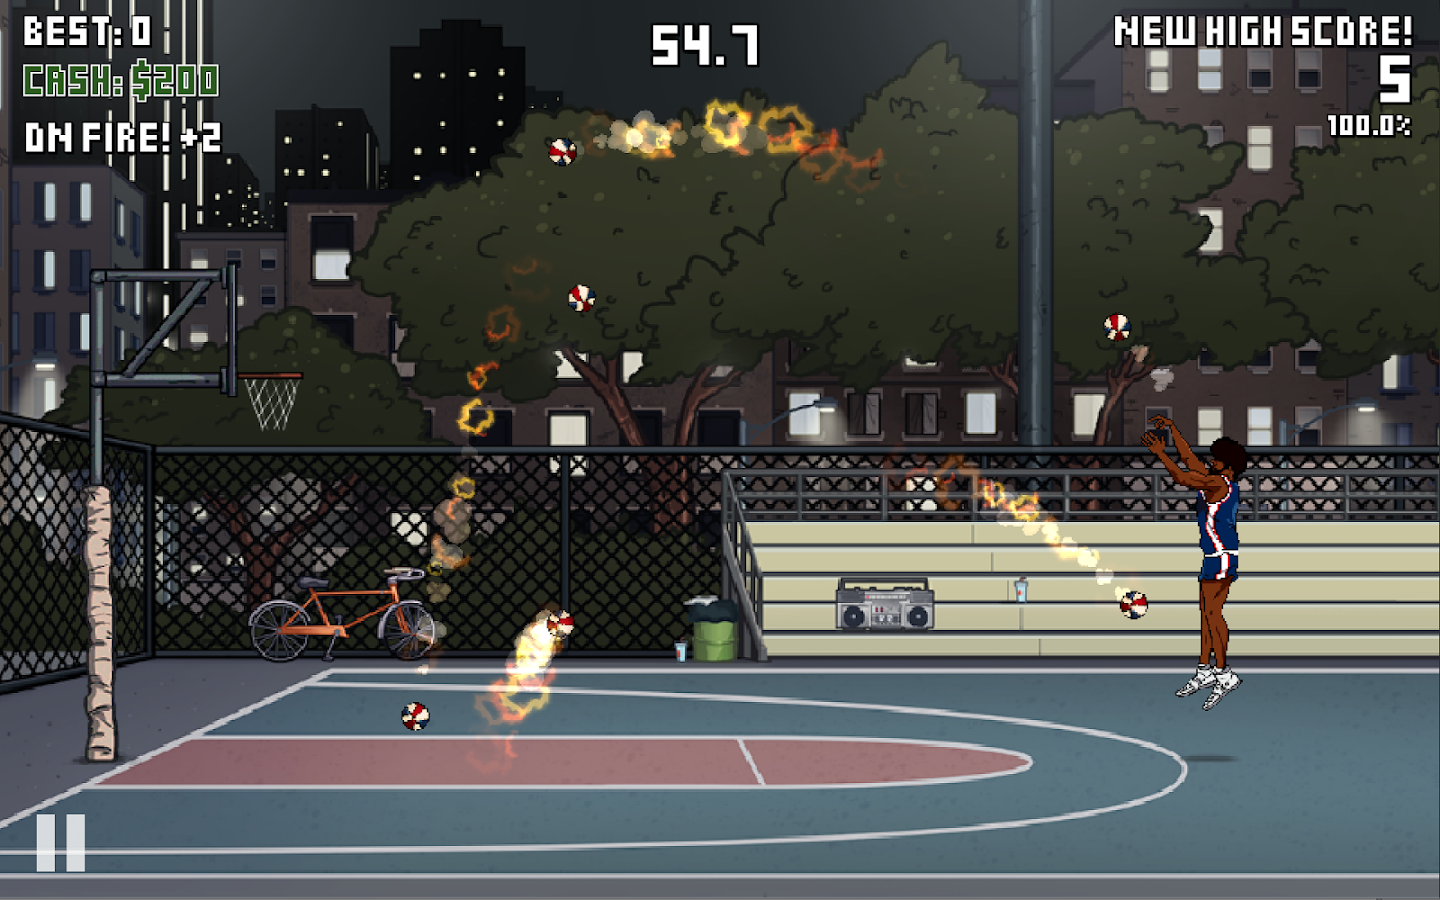 Пиксельная игра про баскетбол. Game time Basketball. Игра про баскетбол на андроид с видом от 3 лица. Игра на андроид в баскетбол по сети на время.